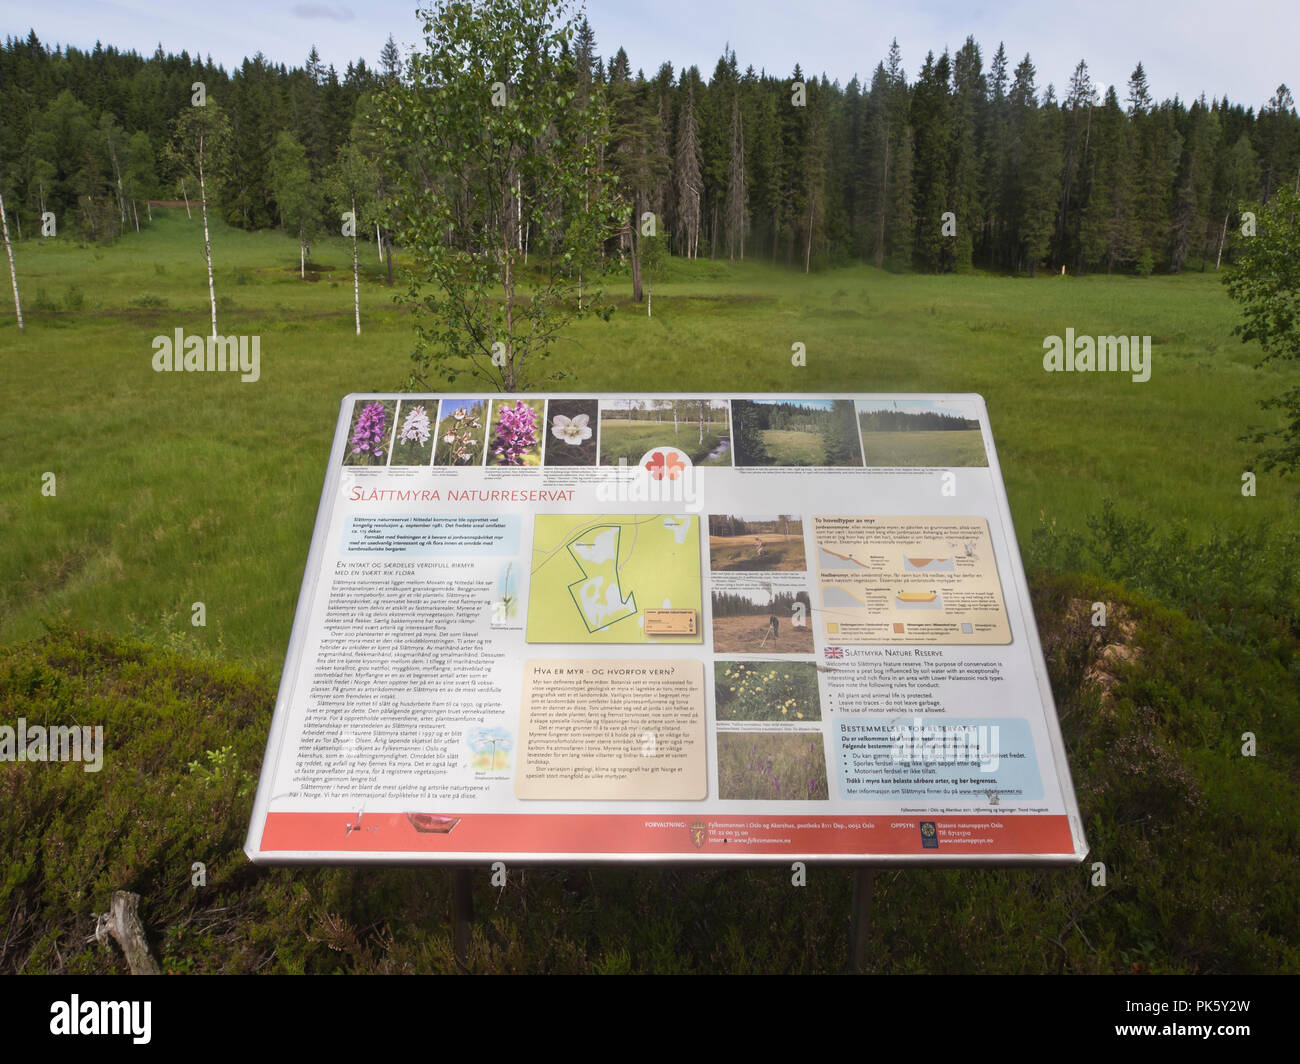 Slåttmyra Naturreservat, einem Naturschutzgebiet Konservieren von alten Gras Ernte Techniken von den Mauren, die in vielen Orchideenarten, Oslo, Norwegen Stockfoto